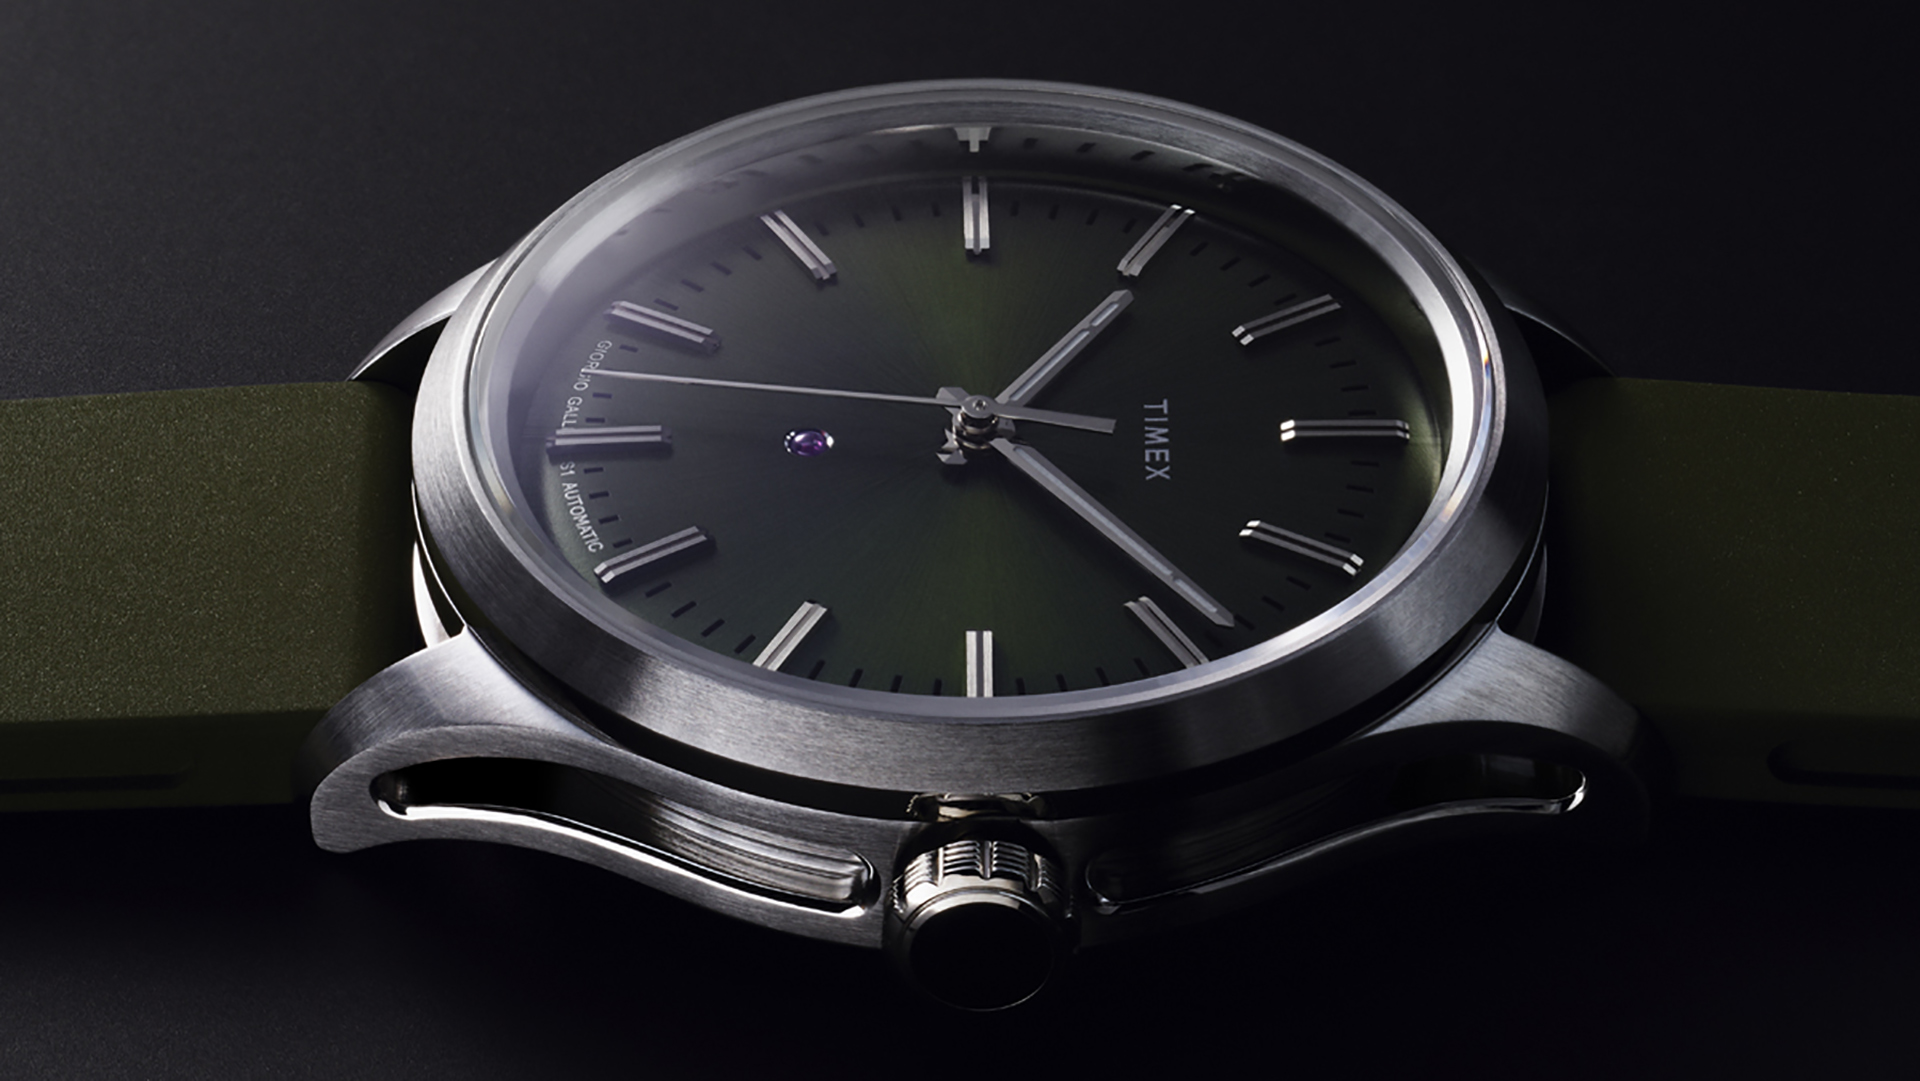 Timex Giorgio Galli S1 Automatic 38mm: Rẻ bền đẹp cho anh em cổ tay bé, giá 450 USD